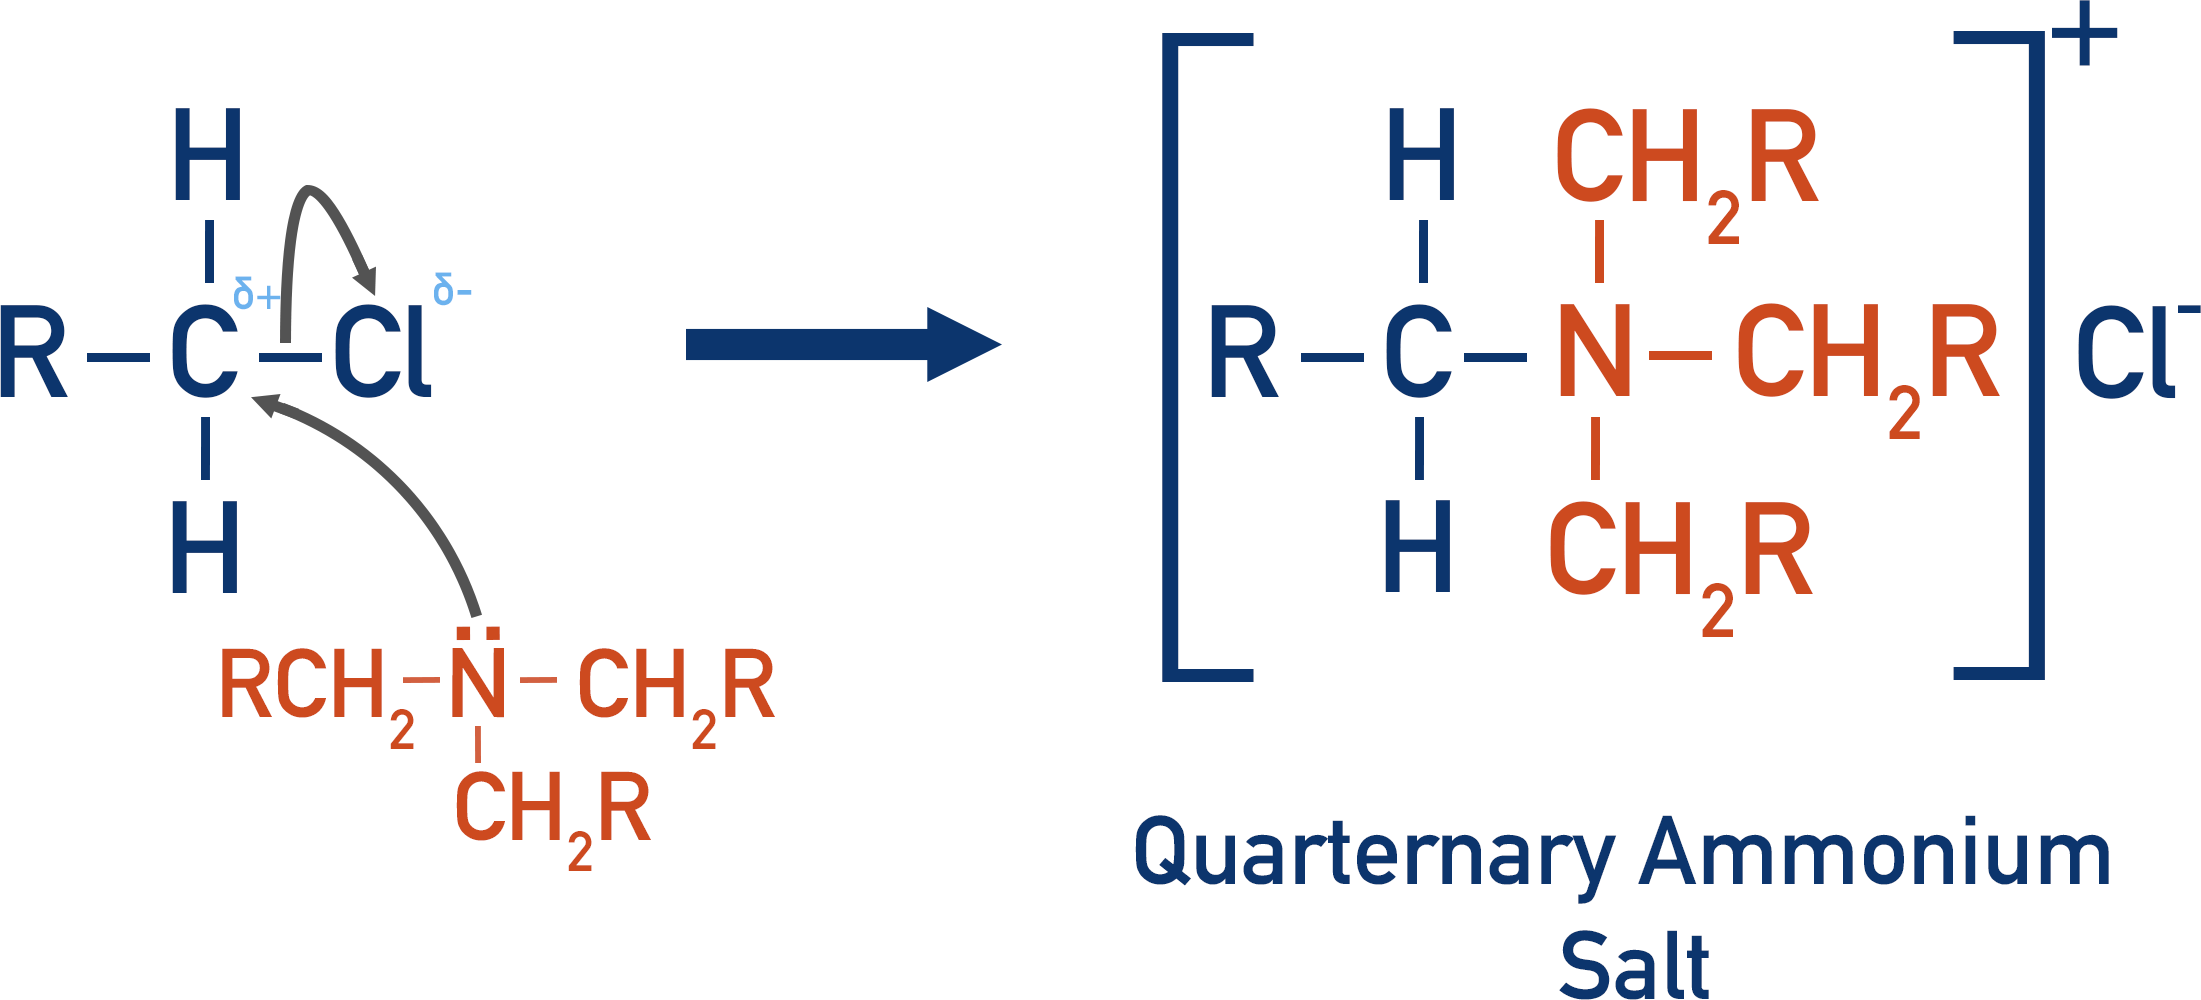 forming quarternary ammonium salt from halogenoalkane and tertiary amine